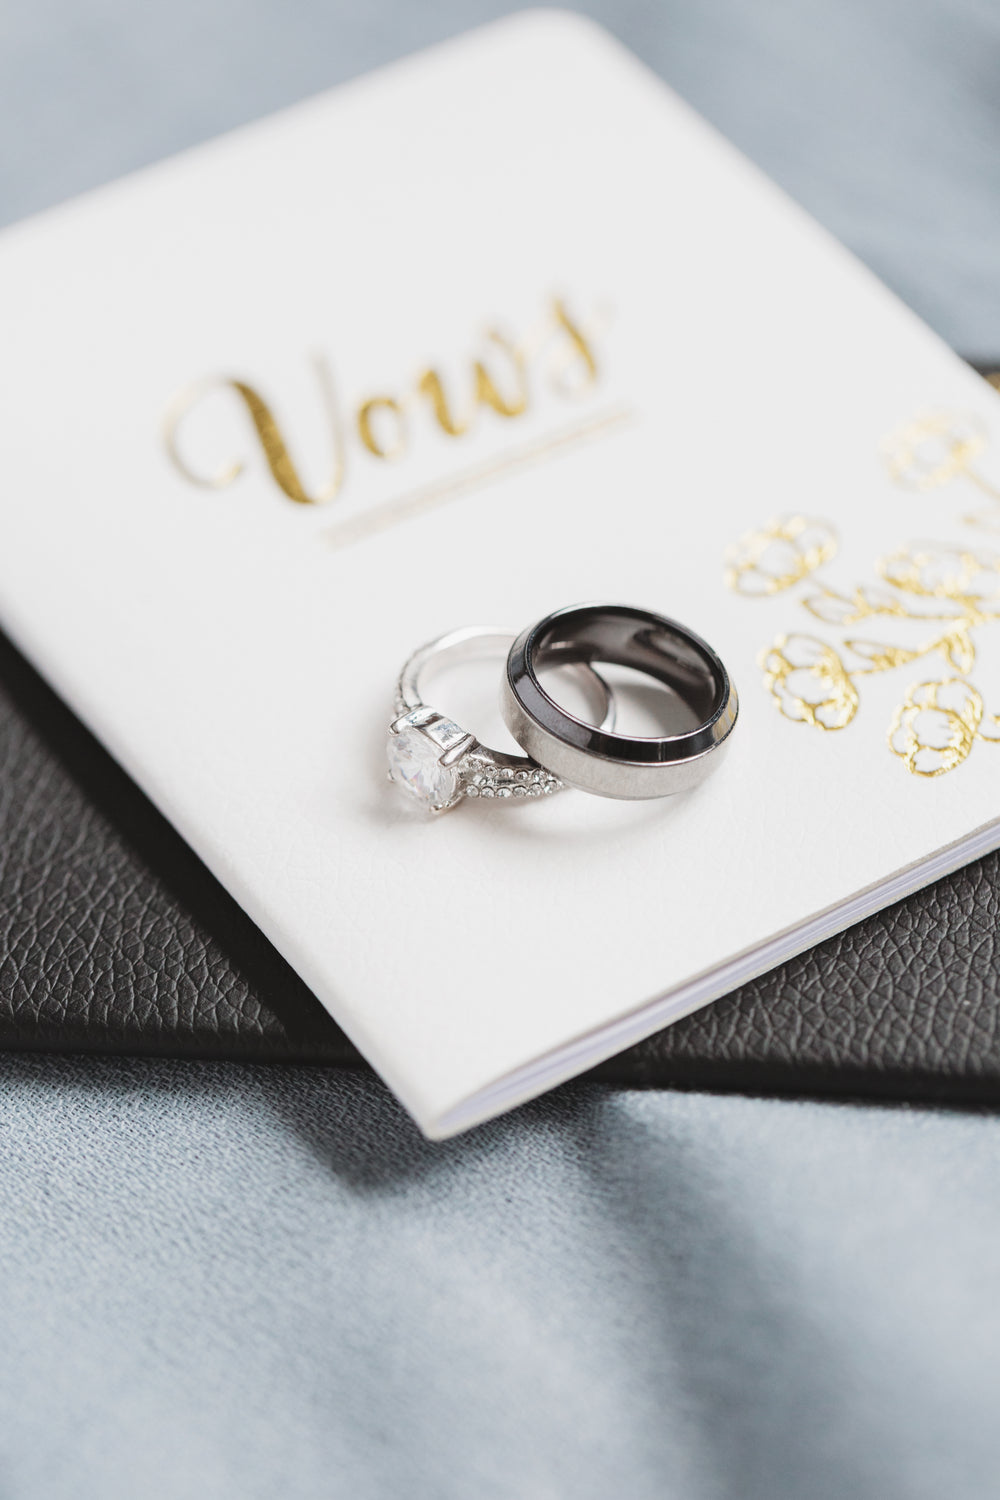 婚礼rings with wedding vows